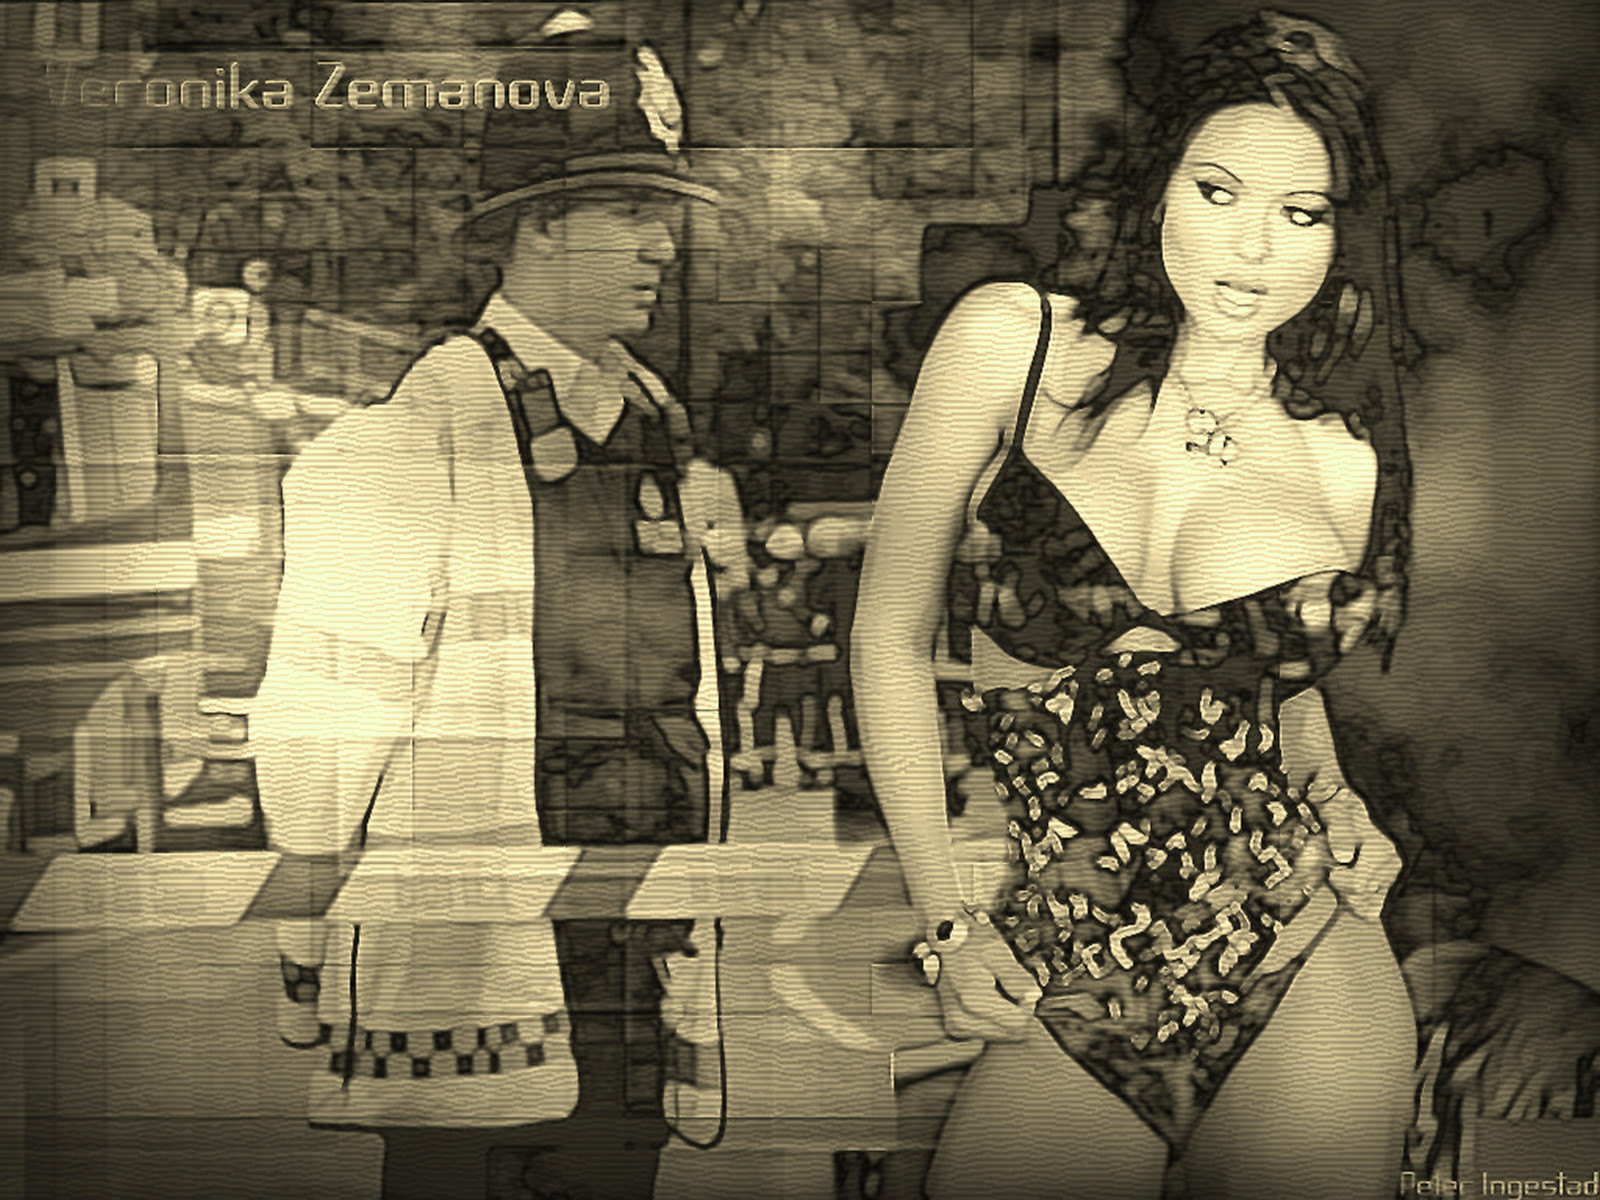 Download full size Veronica Zemanova wallpaper / Celebrities Female / 1600x1200